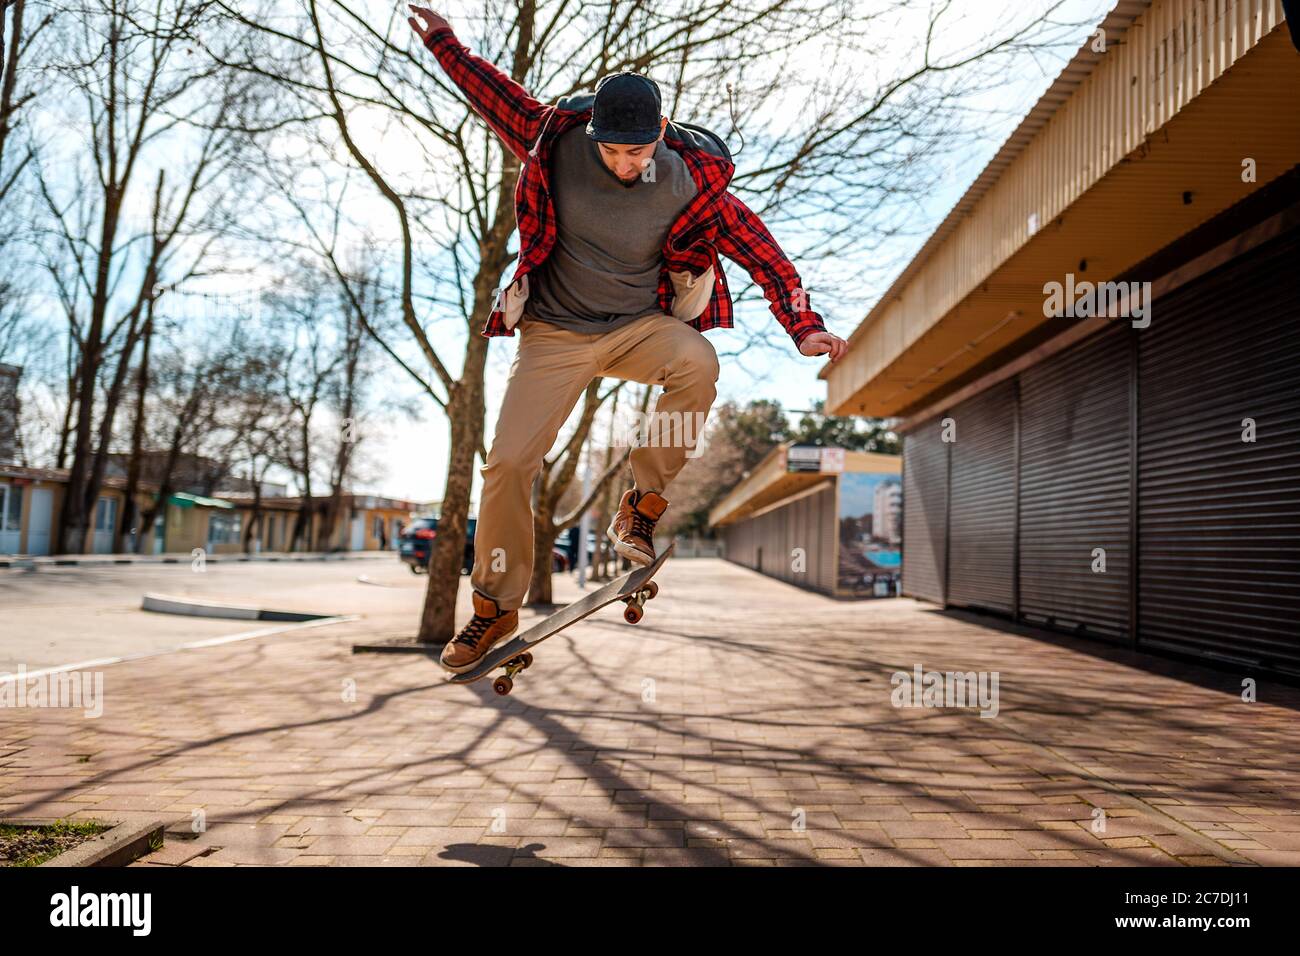 Ein junger Hipster-Mann macht einen Sprung mit einem Skateboard, Kickflip oder Ollie. Speicherplatz kopieren. Konzept des aktiven Lebensstils und der Straßenkultur. Stockfoto